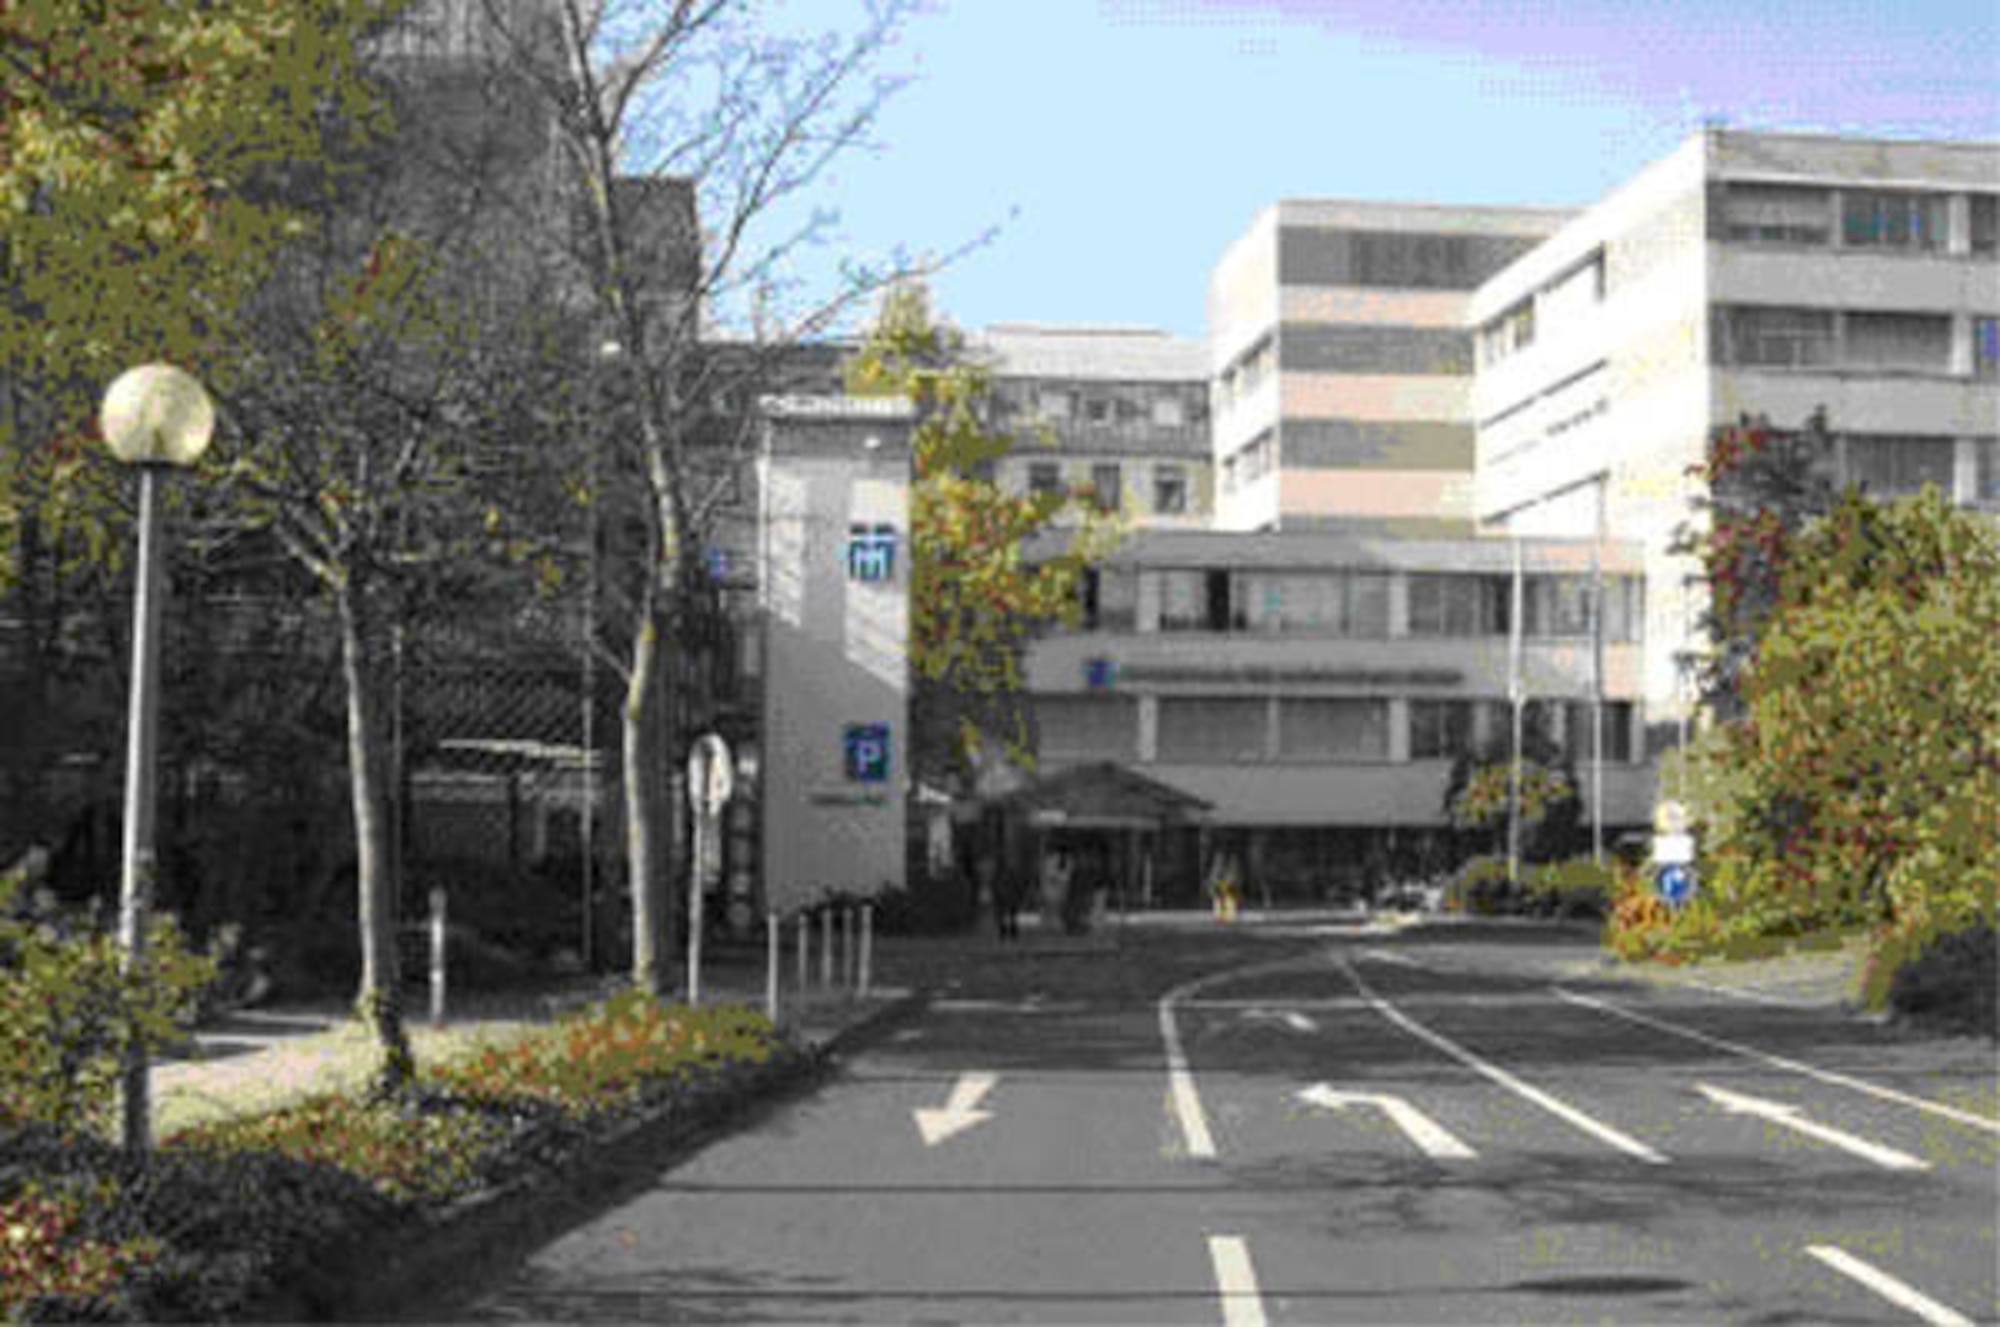 The Krankenhaus der Barmherzigen Bruder (Trier Bruderhaus) is located at Nordallee 1, Trier, Germany.  